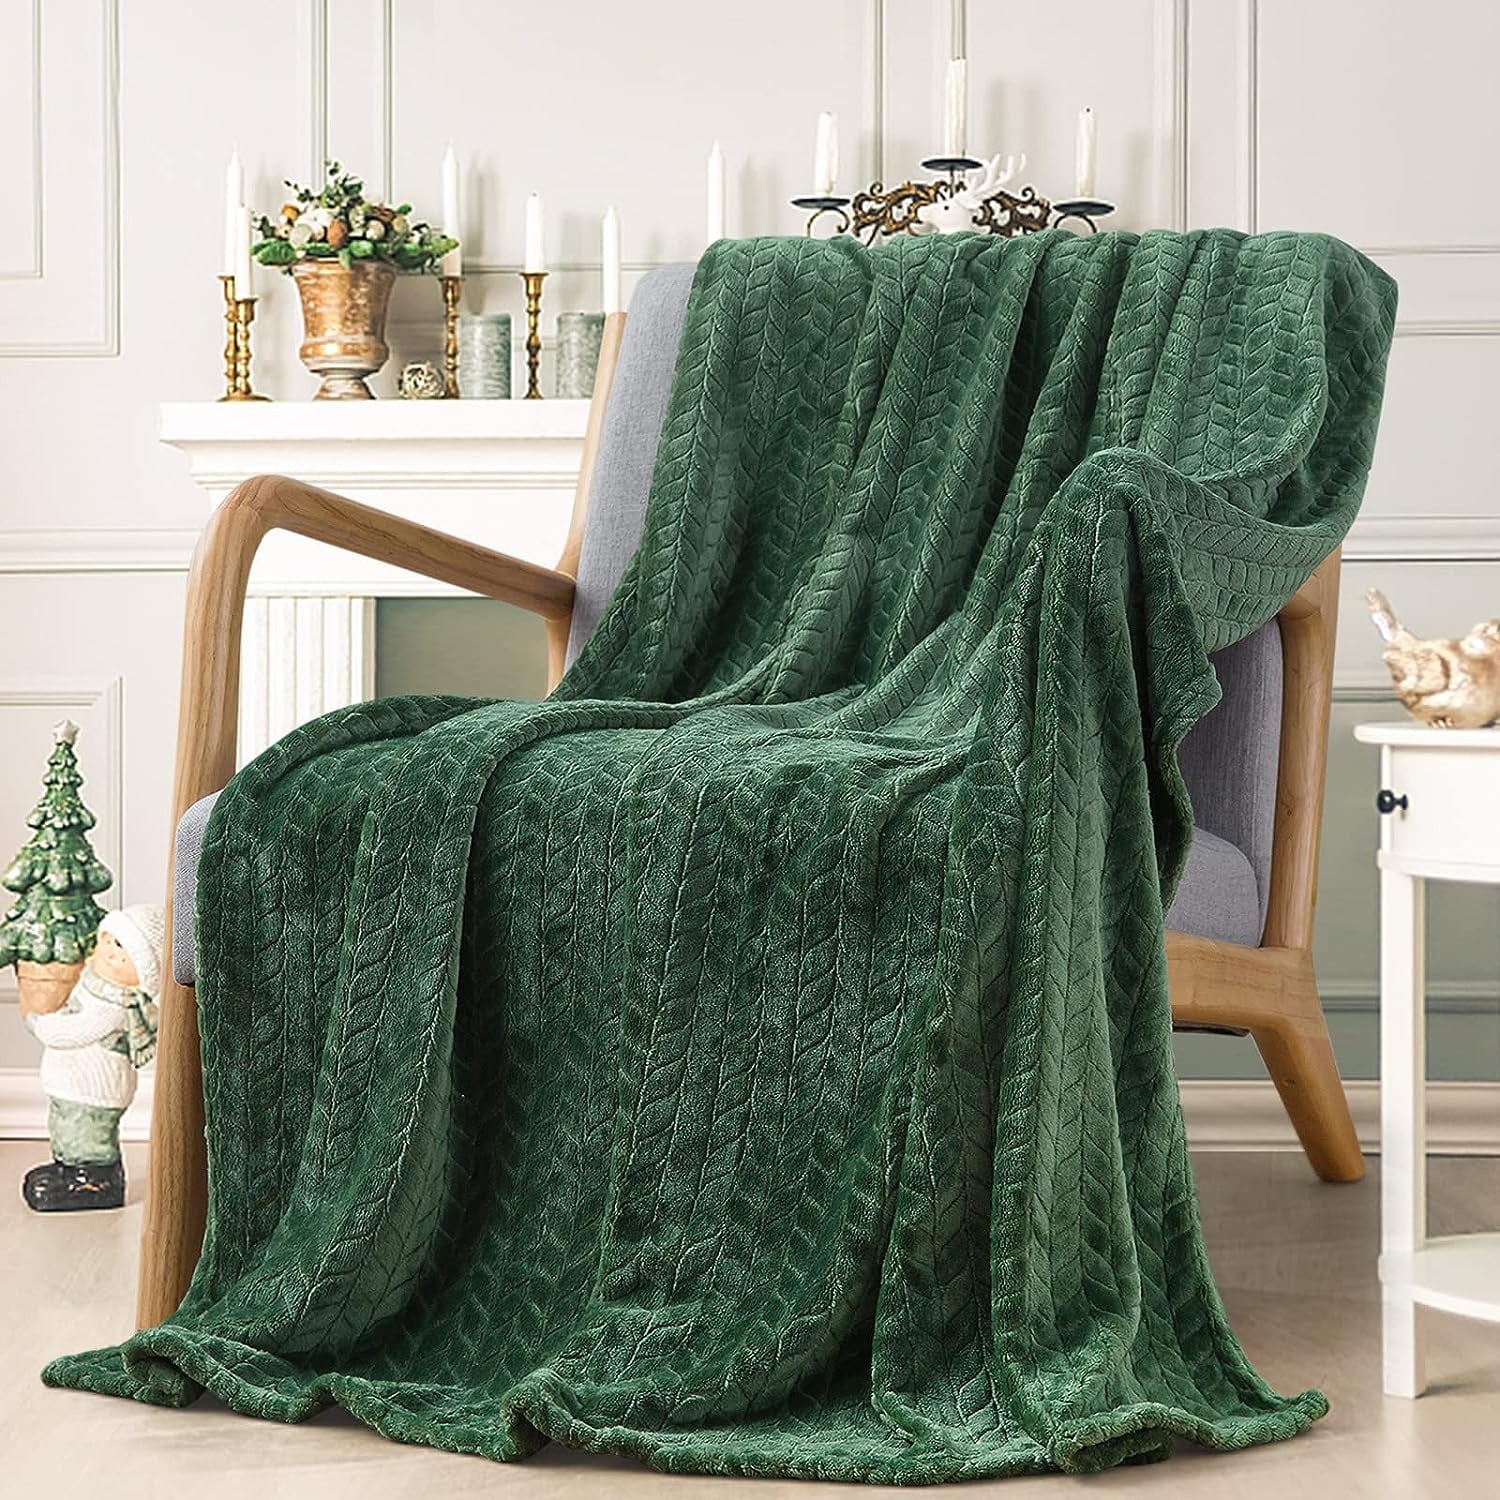 Inhand Fleece Throw Blanket, 50''x60'', Green Blanket Cozy Plush Fleece ...